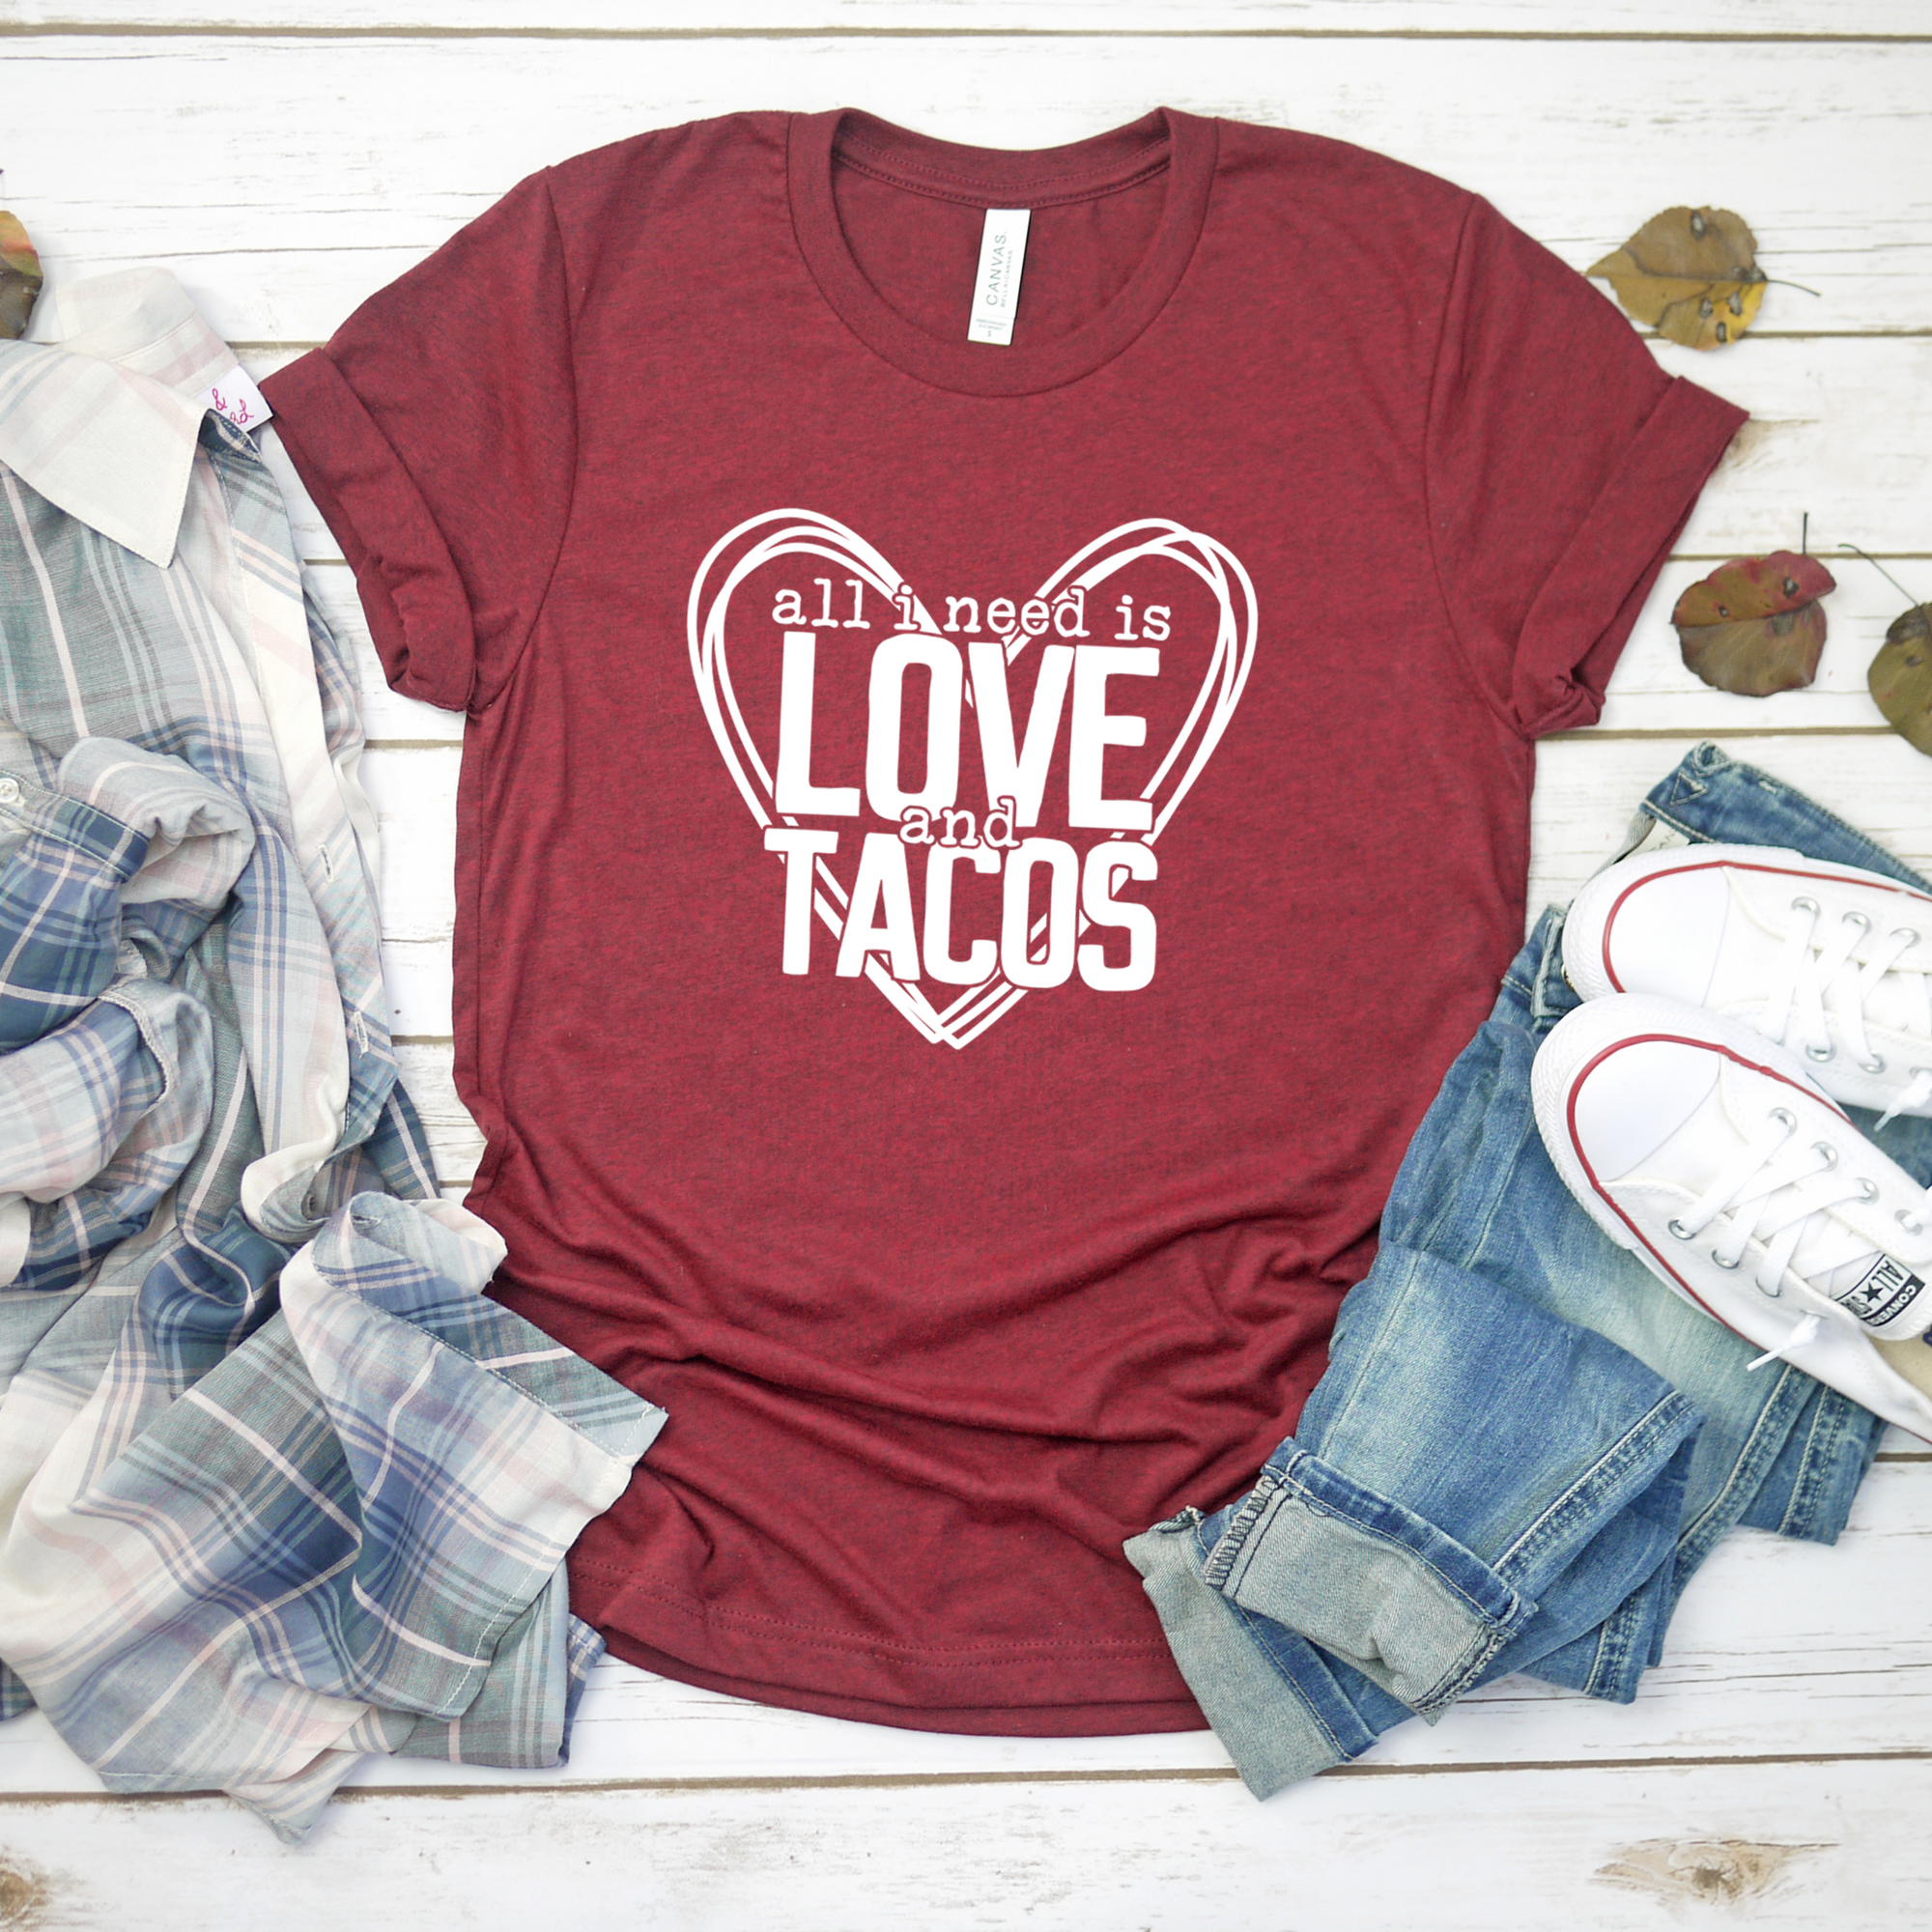 All I Need is Love and Tacos Tee OR Sweatshirt